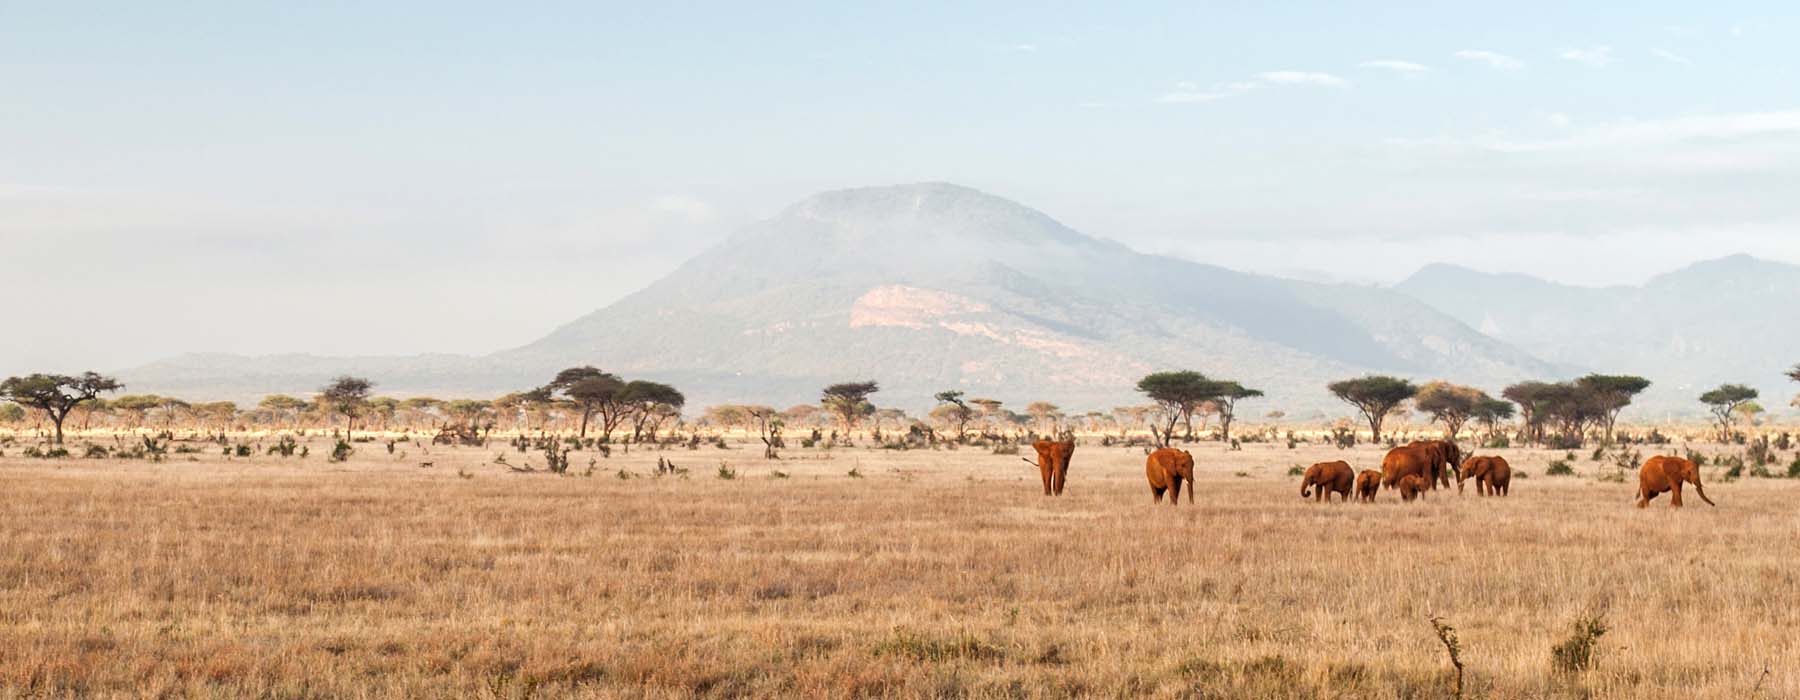 Les grands voyages à deux Kenya